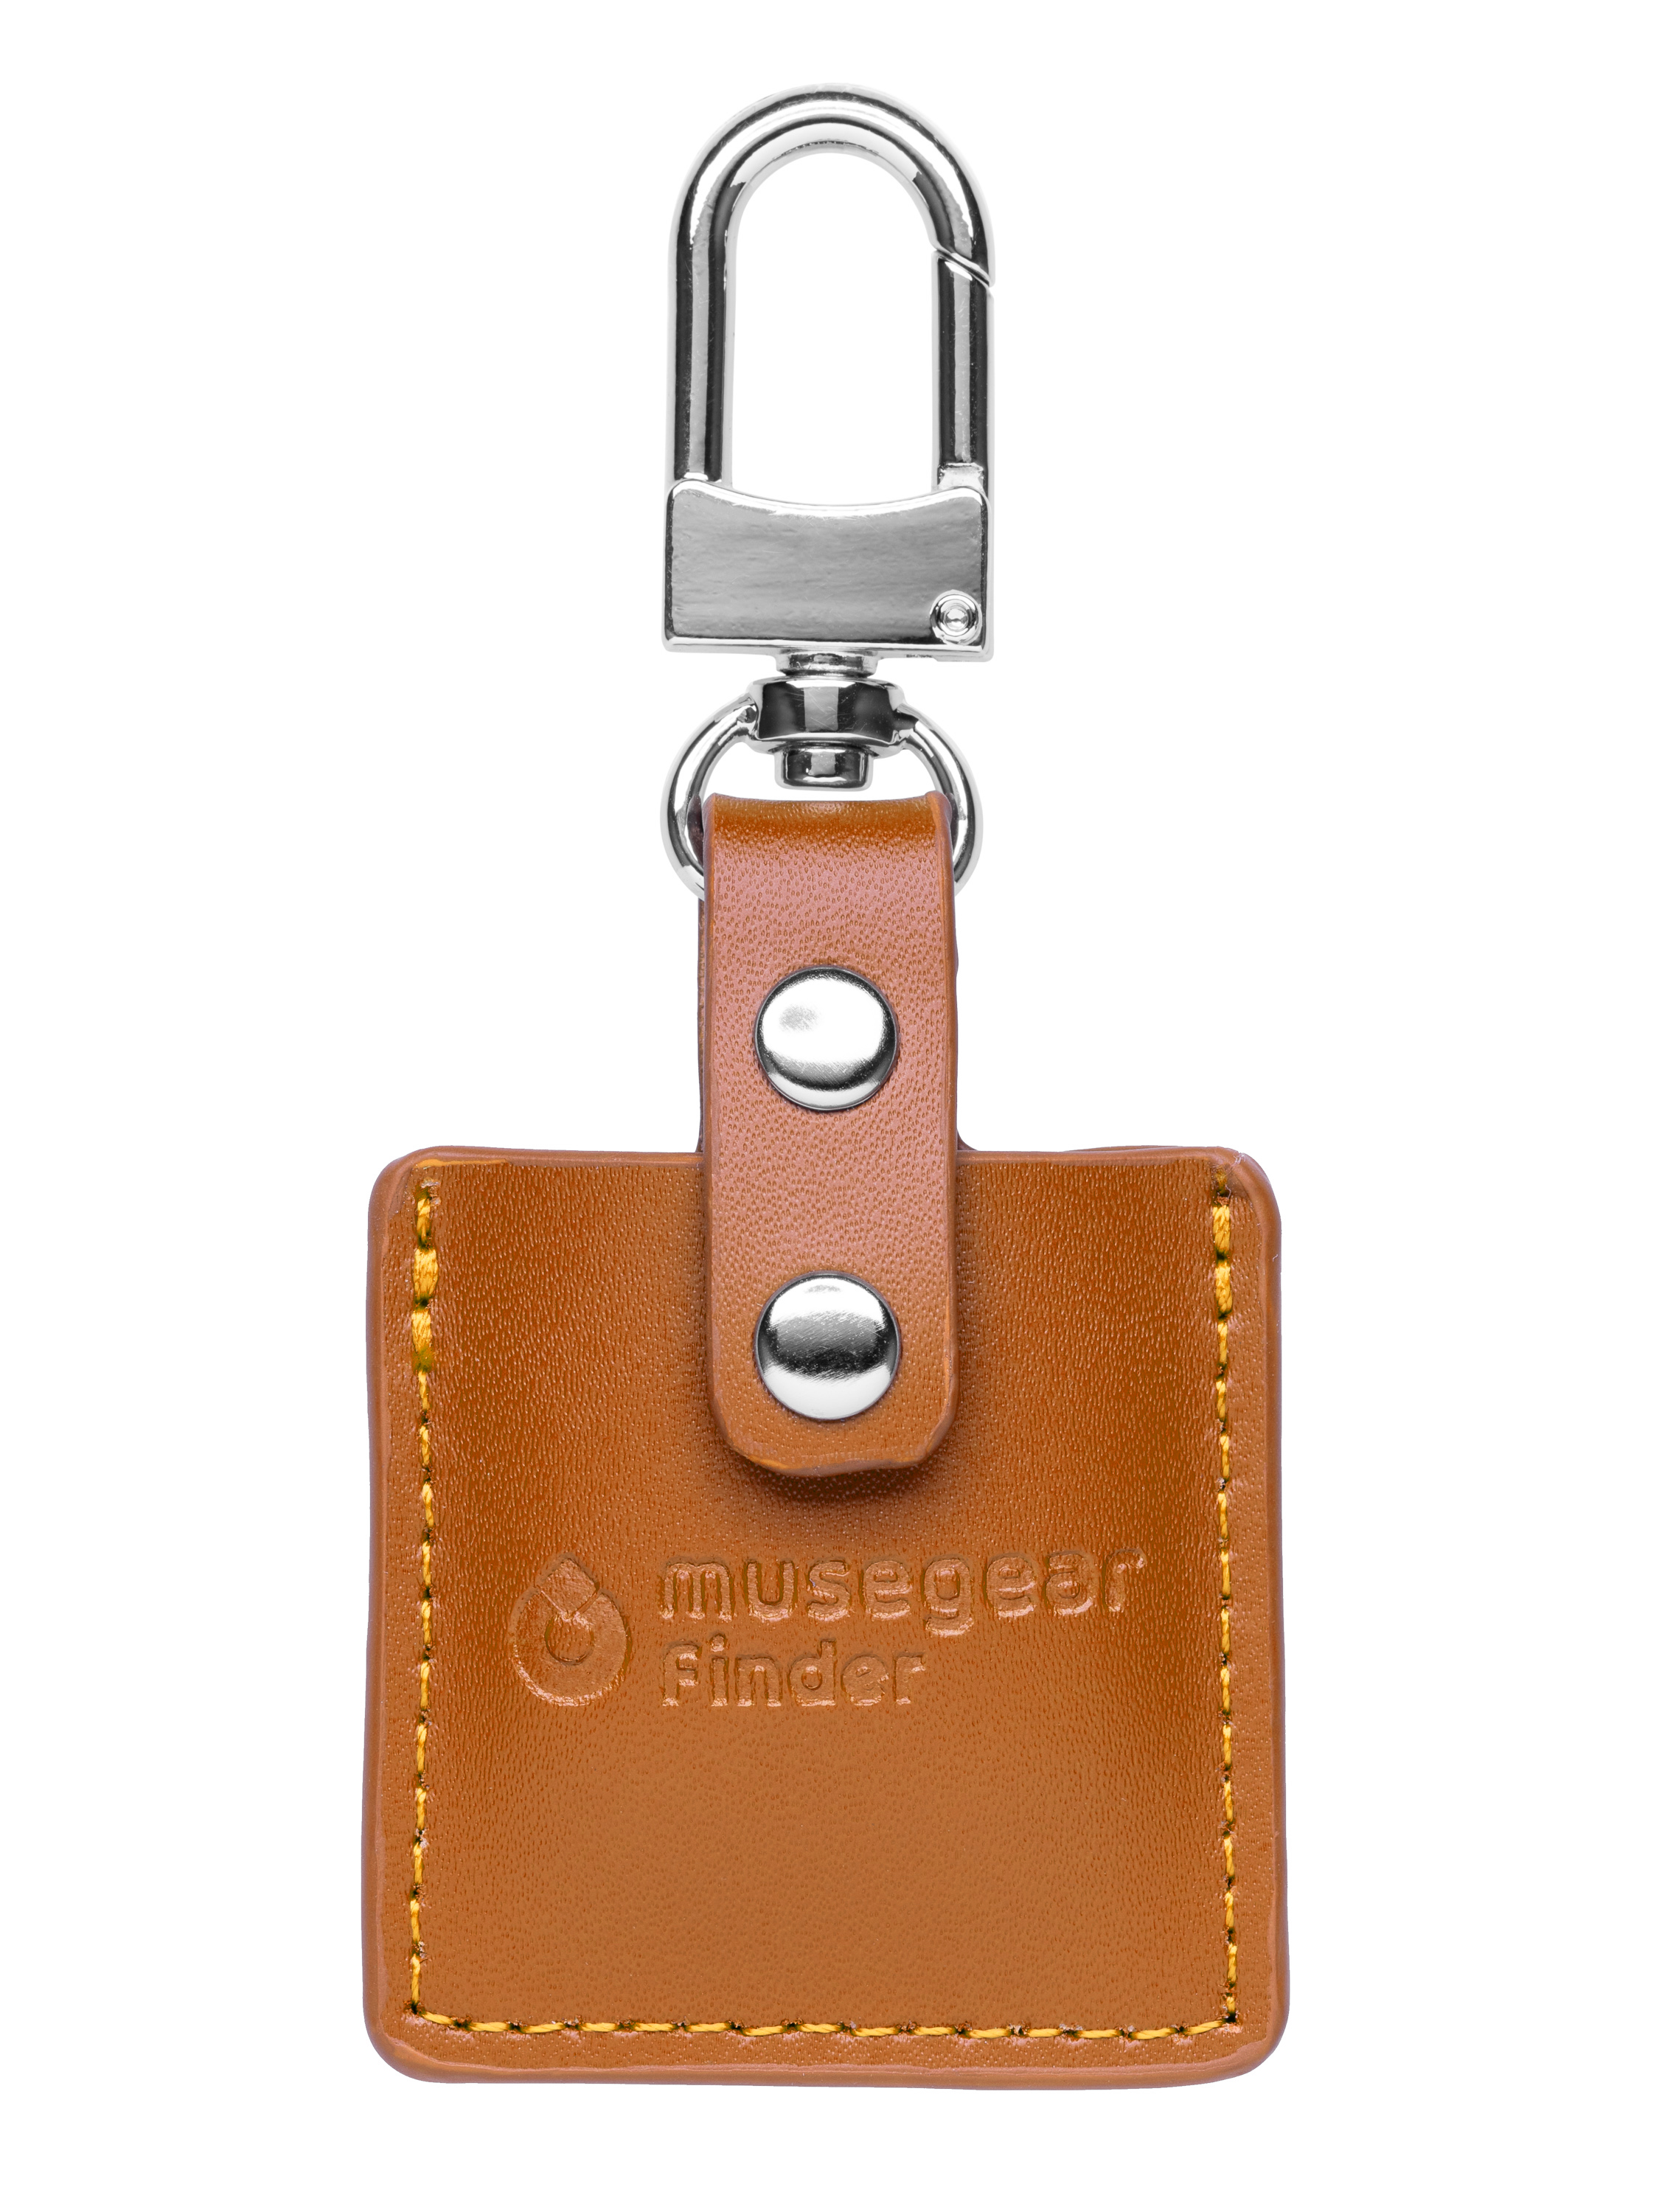 MUSEGEAR Schlüsselfinder mit App aus Bluetooth Deutschland Schlüsselfinder Bluetooth